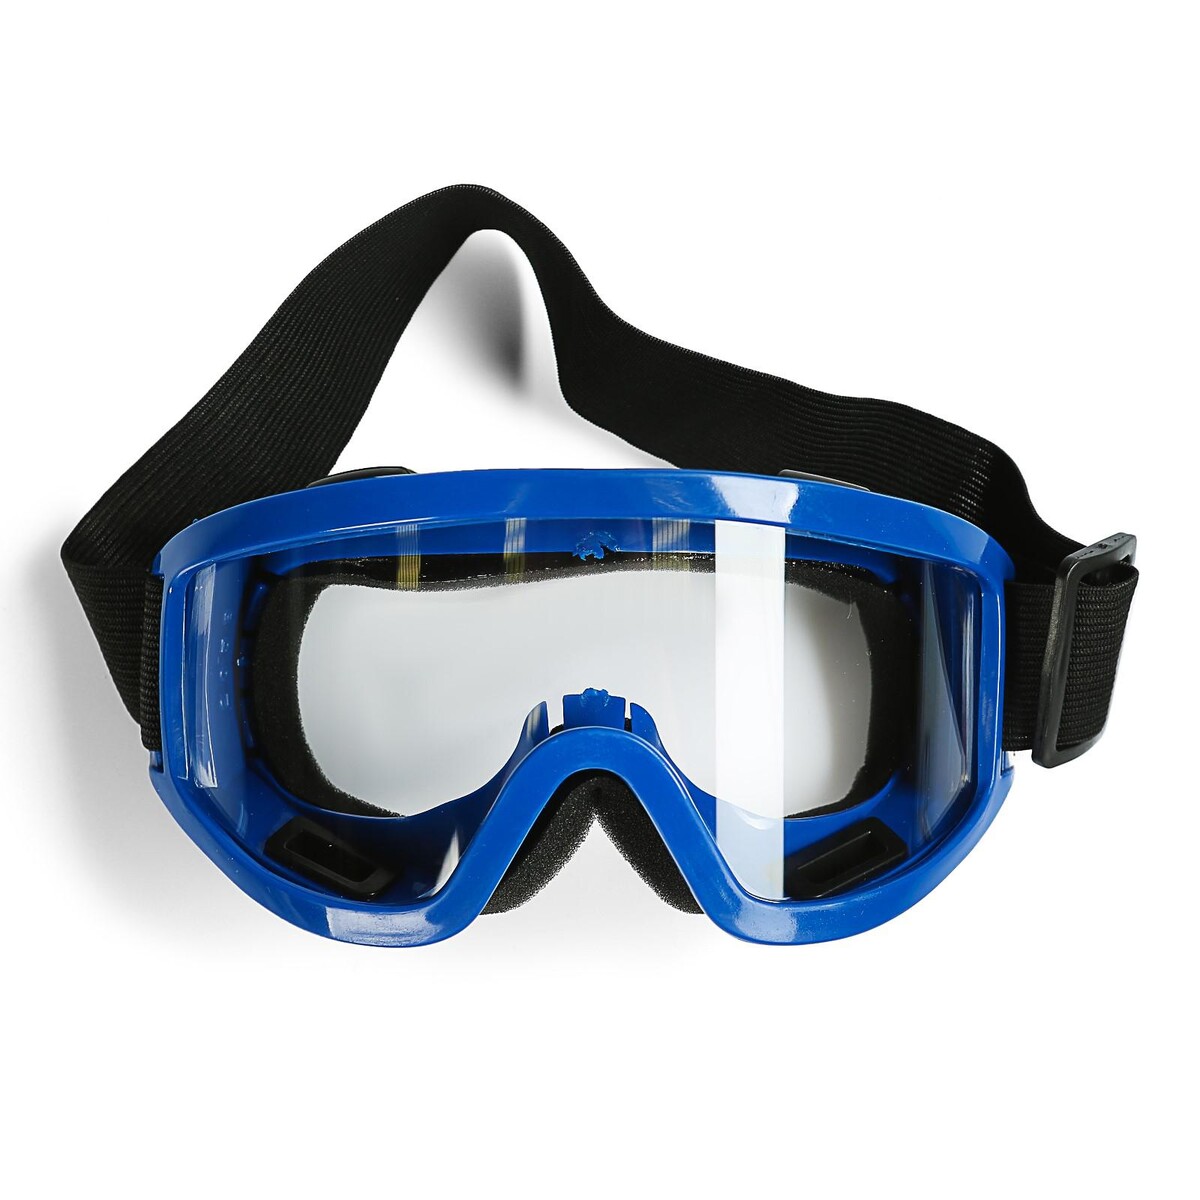 Очки-маска для езды на мототехнике, стекло прозрачное, цвет синий очки маска для езды на мототехнике стекло синий хамелеон оранжевый ом 7